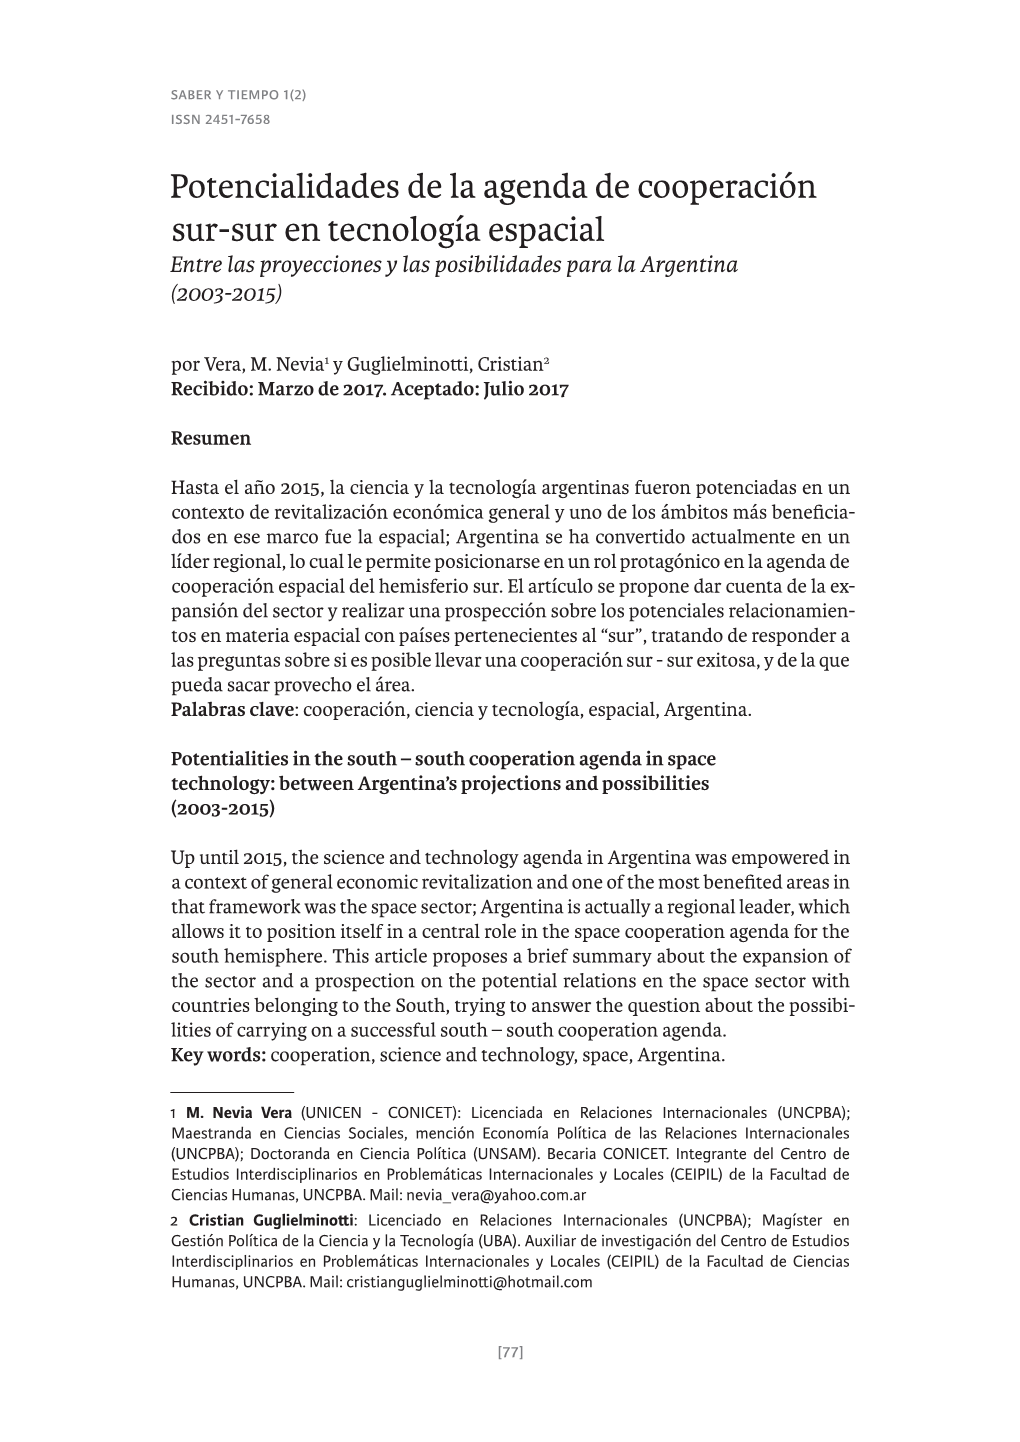 Potencialidades De La Agenda De Cooperación Sur-Sur En Tecnología Espacial Entre Las Proyecciones Y Las Posibilidades Para La Argentina (2003-2015) Por Vera, M